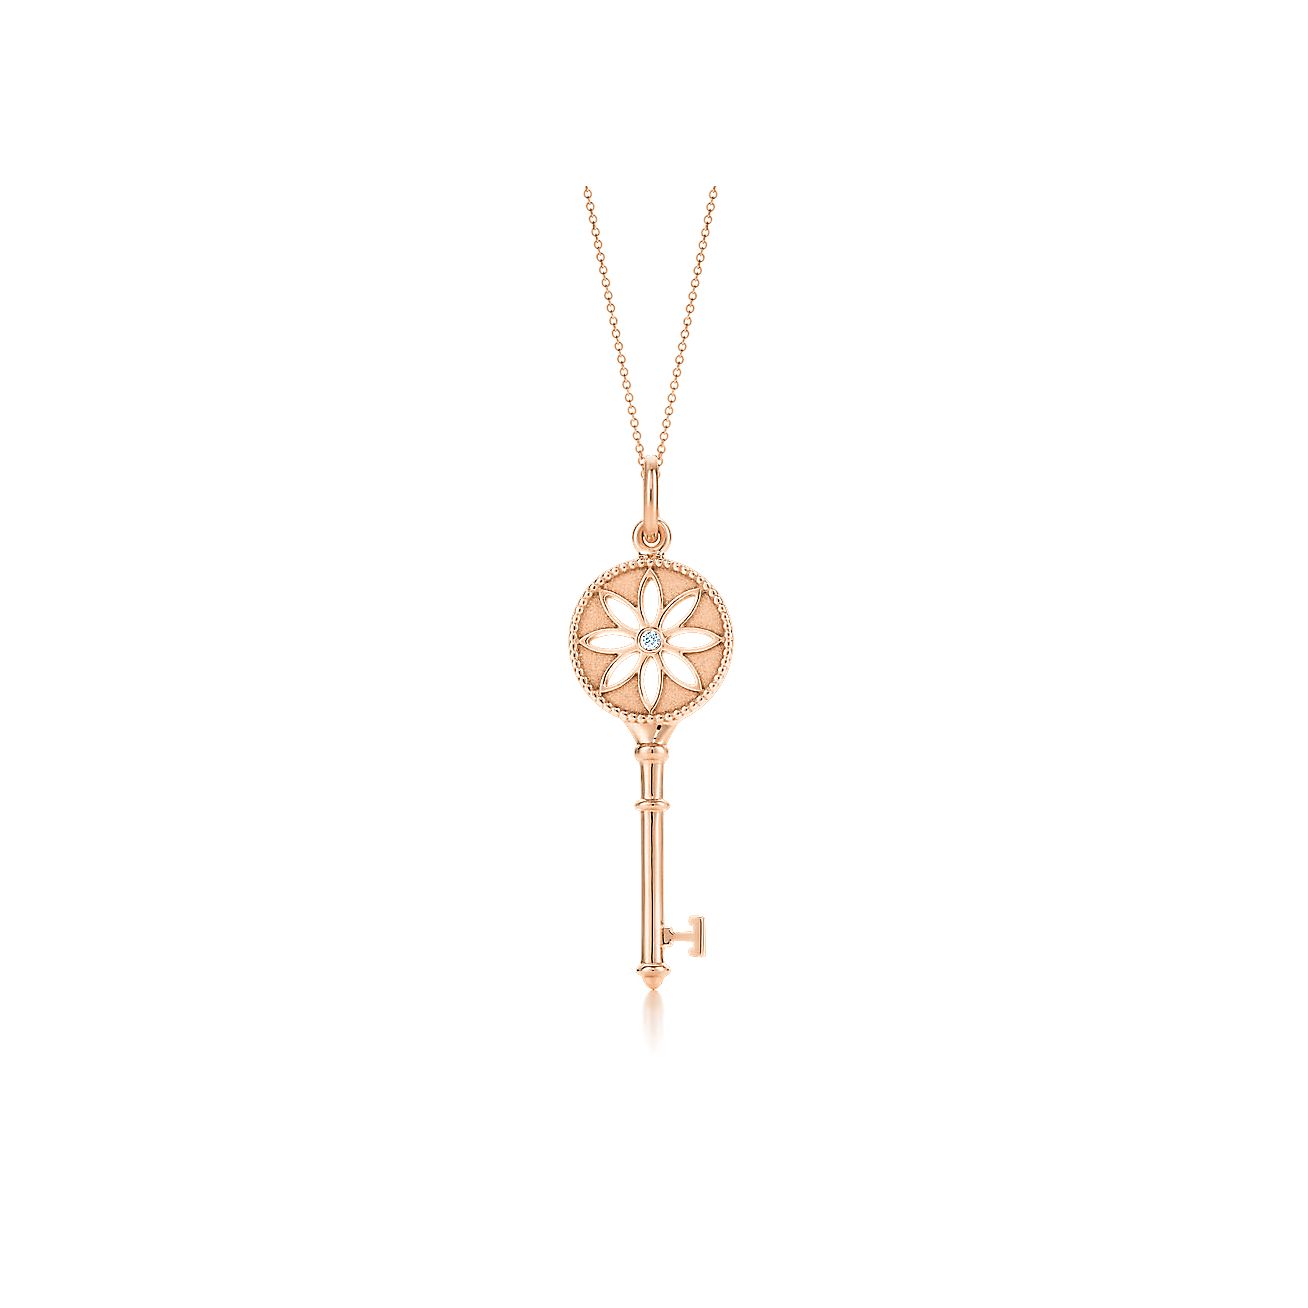 Tiffany Keys daisy key pendant in 18k rose gold with a diamond 